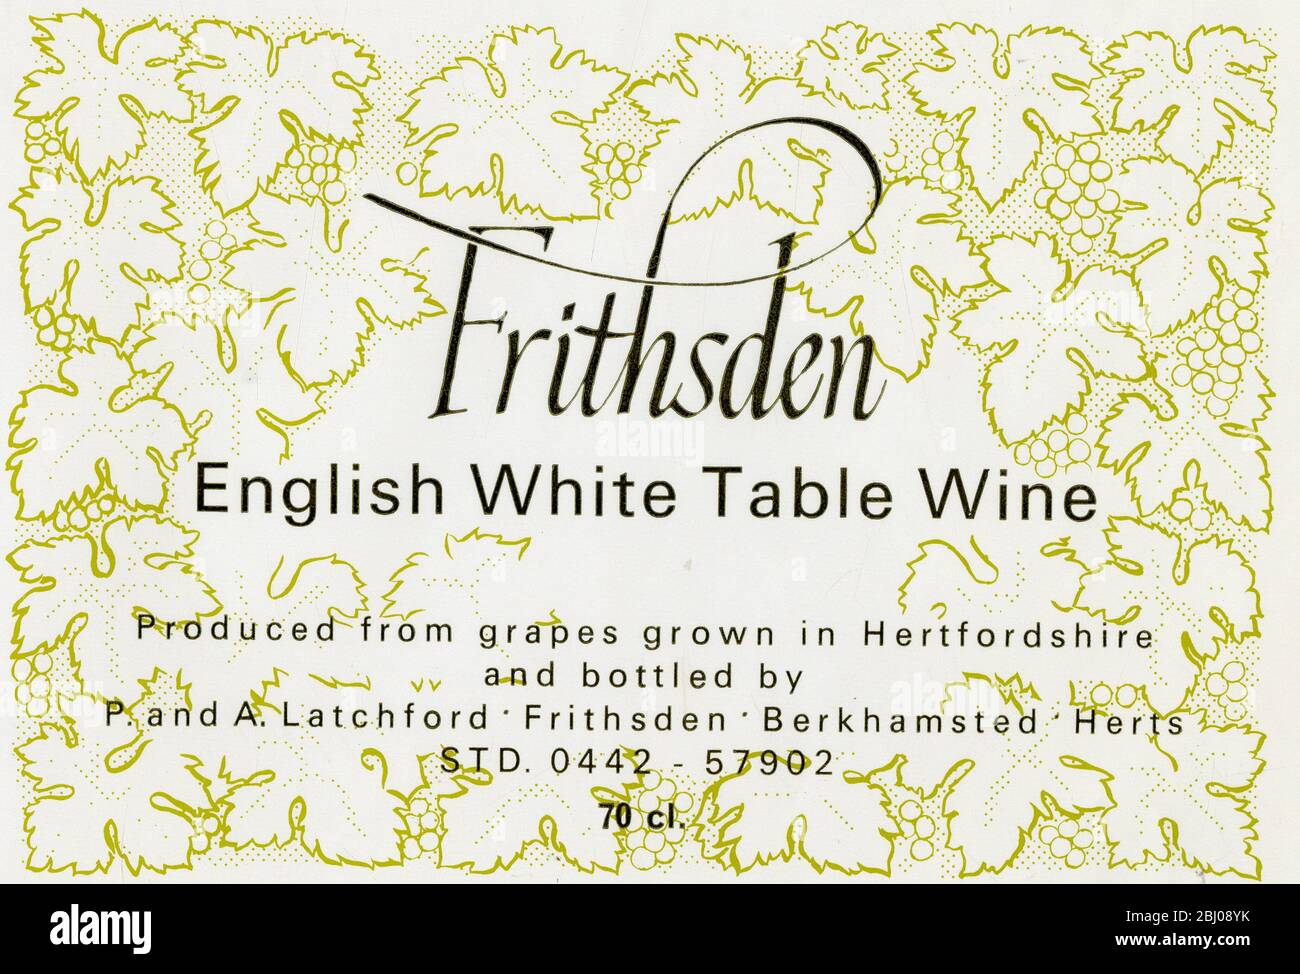 Weinetikett - Frithsden englischer Weißtafel Wein. Hergestellt in Hertfordshire und abgefüllt von P & A Latchford in Frithsden, Berkhamsted, Hertfordshire. - 1977 Stockfoto